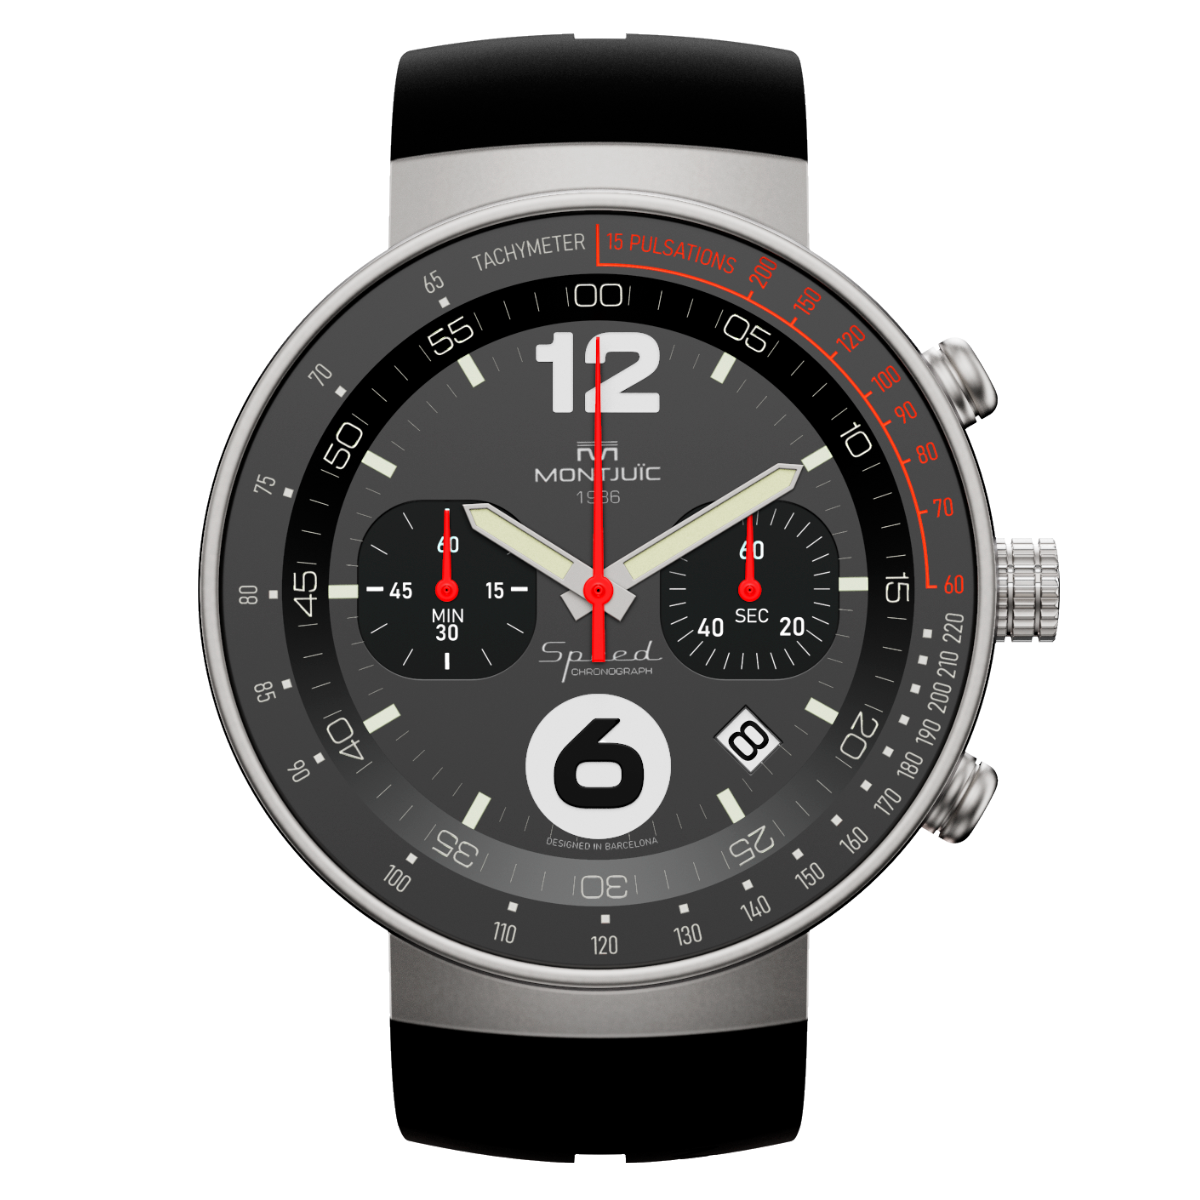 Reloj Montjuic Speed Chrono Negro con detalles Rojos